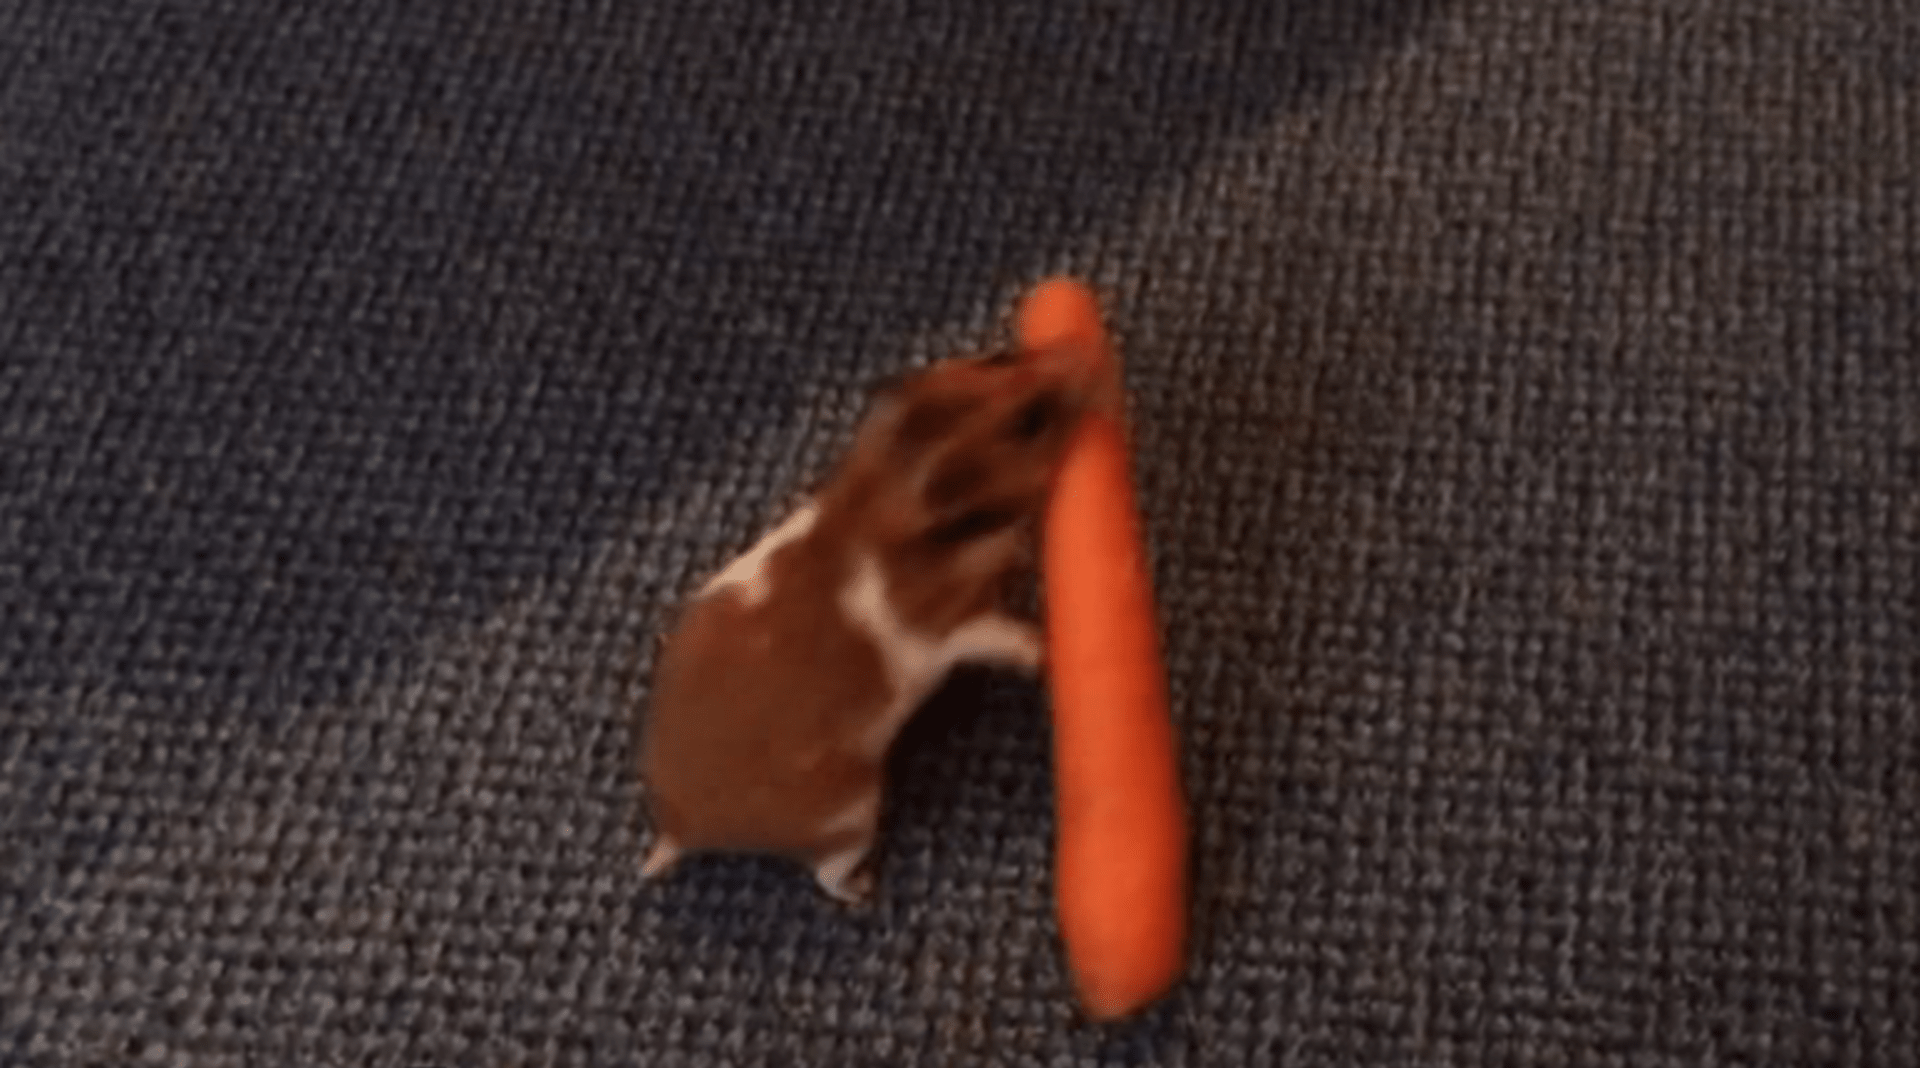 Video Divácké zprávy: Křeček maže s mrkví z dohledu